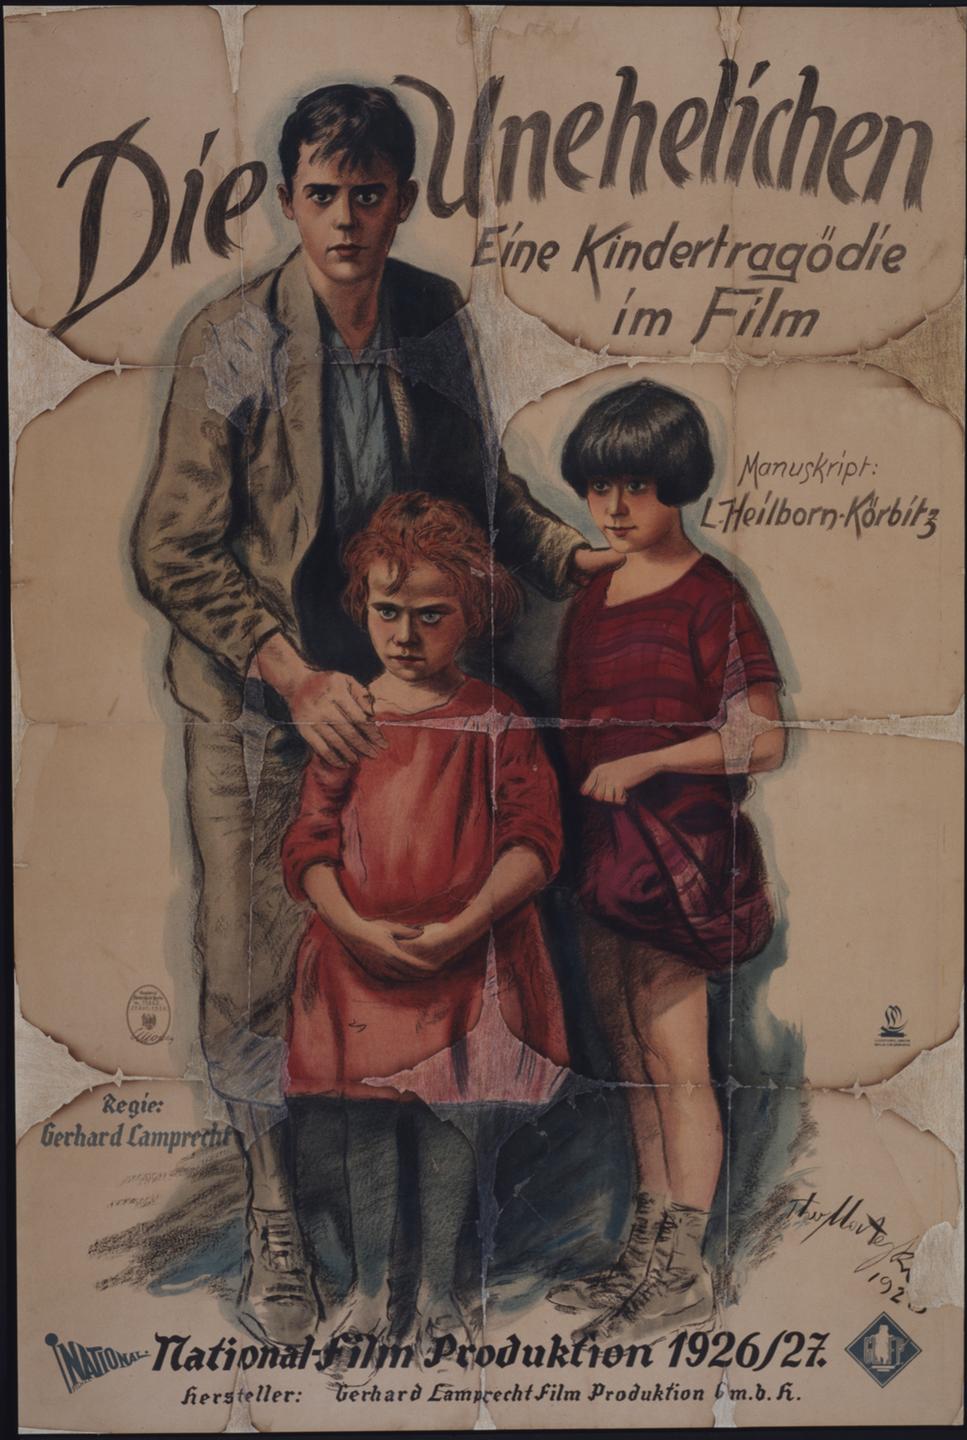 Ein altes Filmplakat des Films "Die Unehelichen - Eine Kindertragödie im Film". Darunter drei illustrierte Kinder mit ernstem Blick.